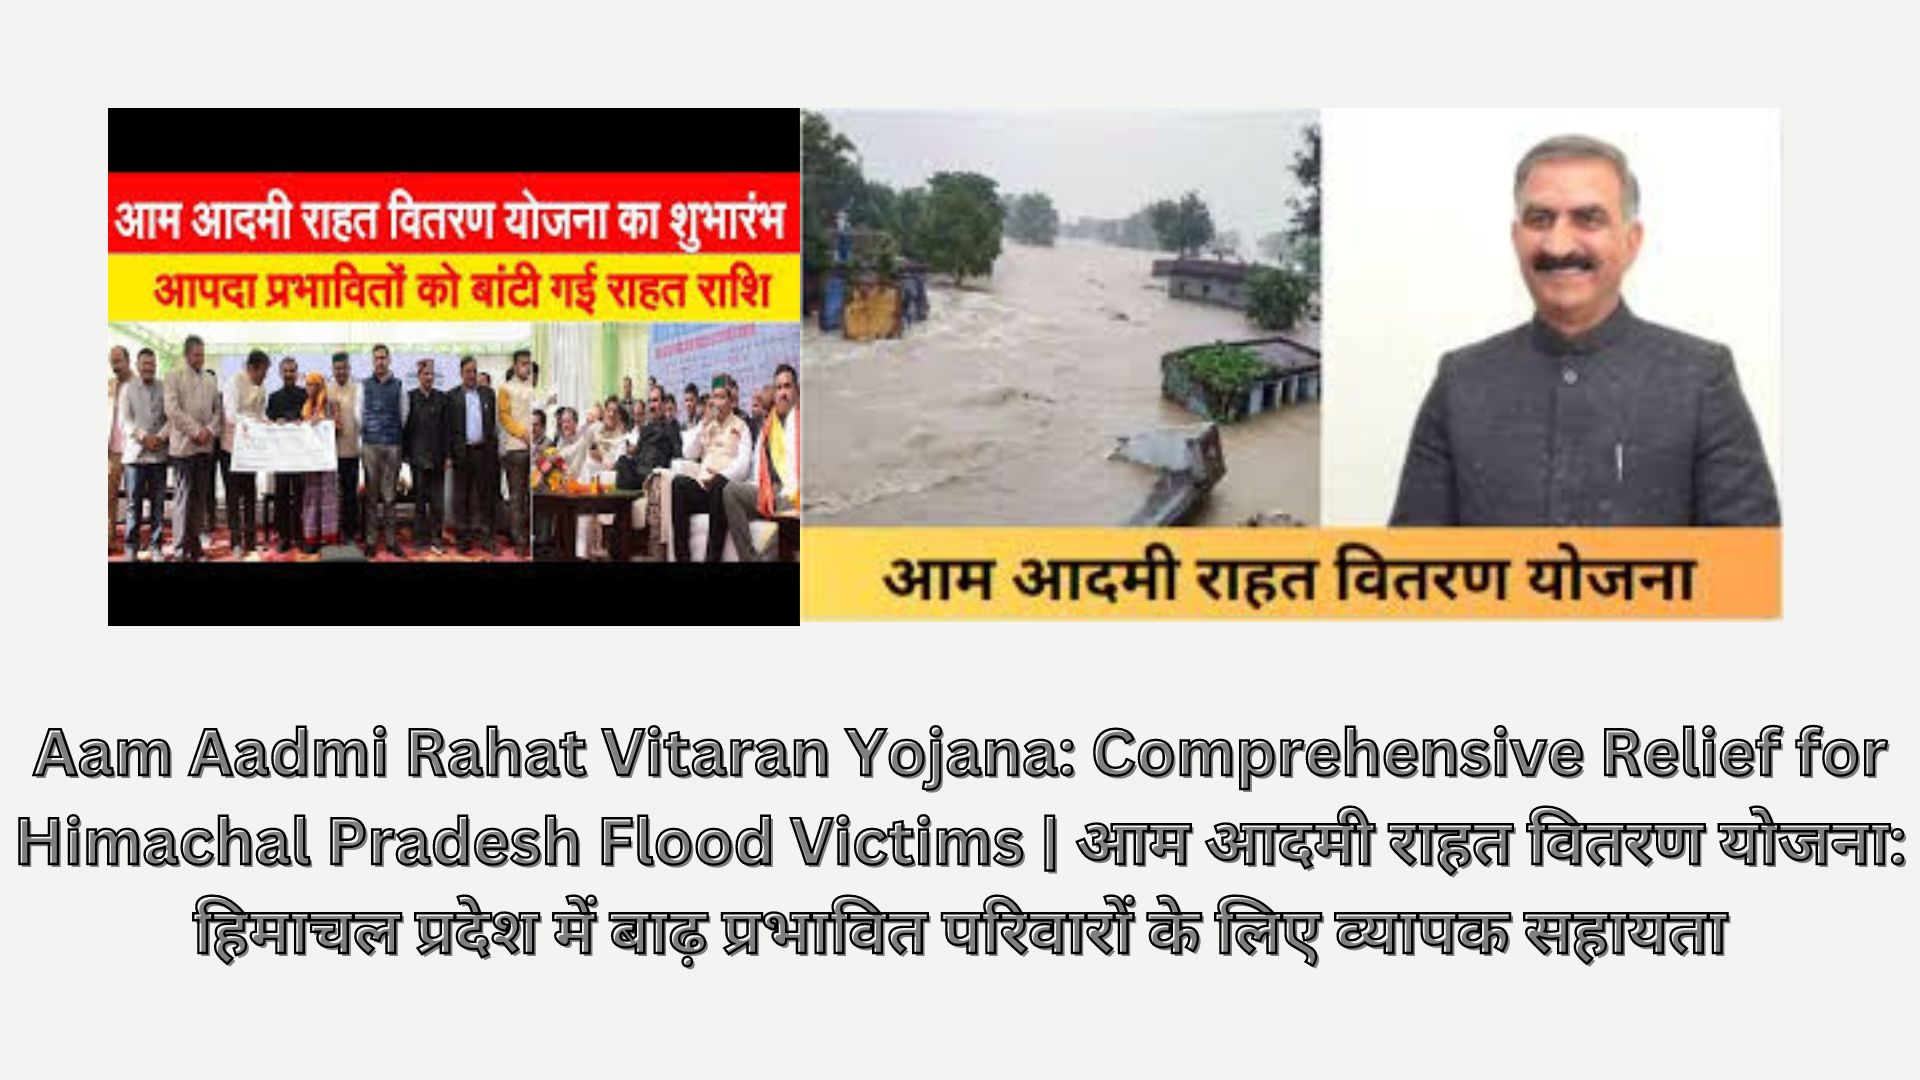 Aam Aadmi Rahat Vitaran Yojana: Comprehensive Relief for Himachal Pradesh Flood Victims | आम आदमी राहत वितरण योजना: हिमाचल प्रदेश में बाढ़ प्रभावित परिवारों के लिए व्यापक सहायता